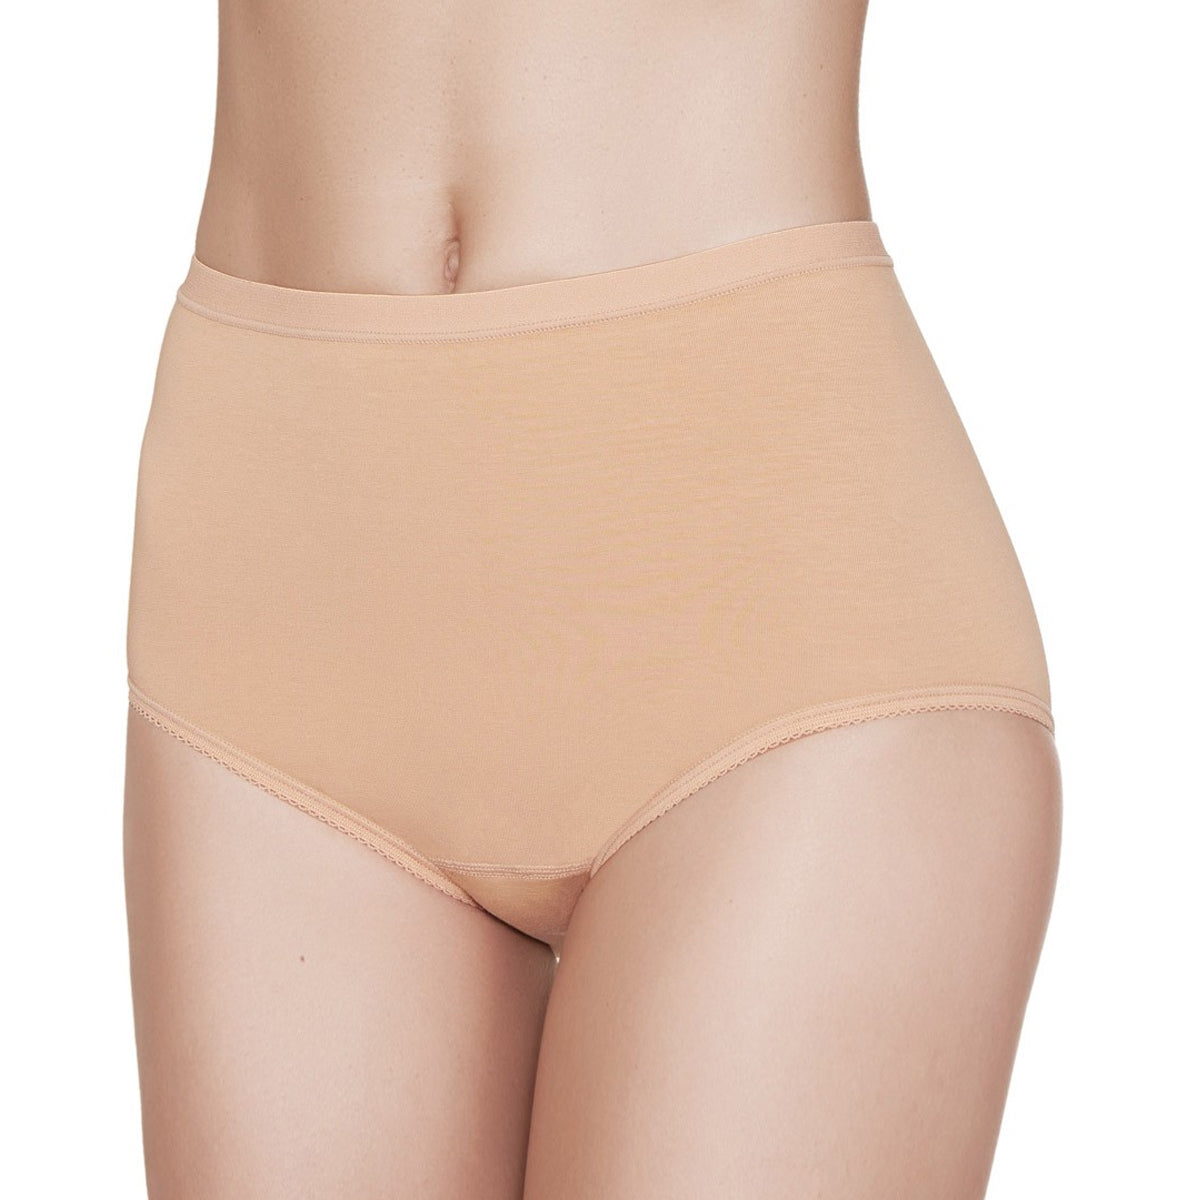 Japanese website is selling a pair of plain beige panties for